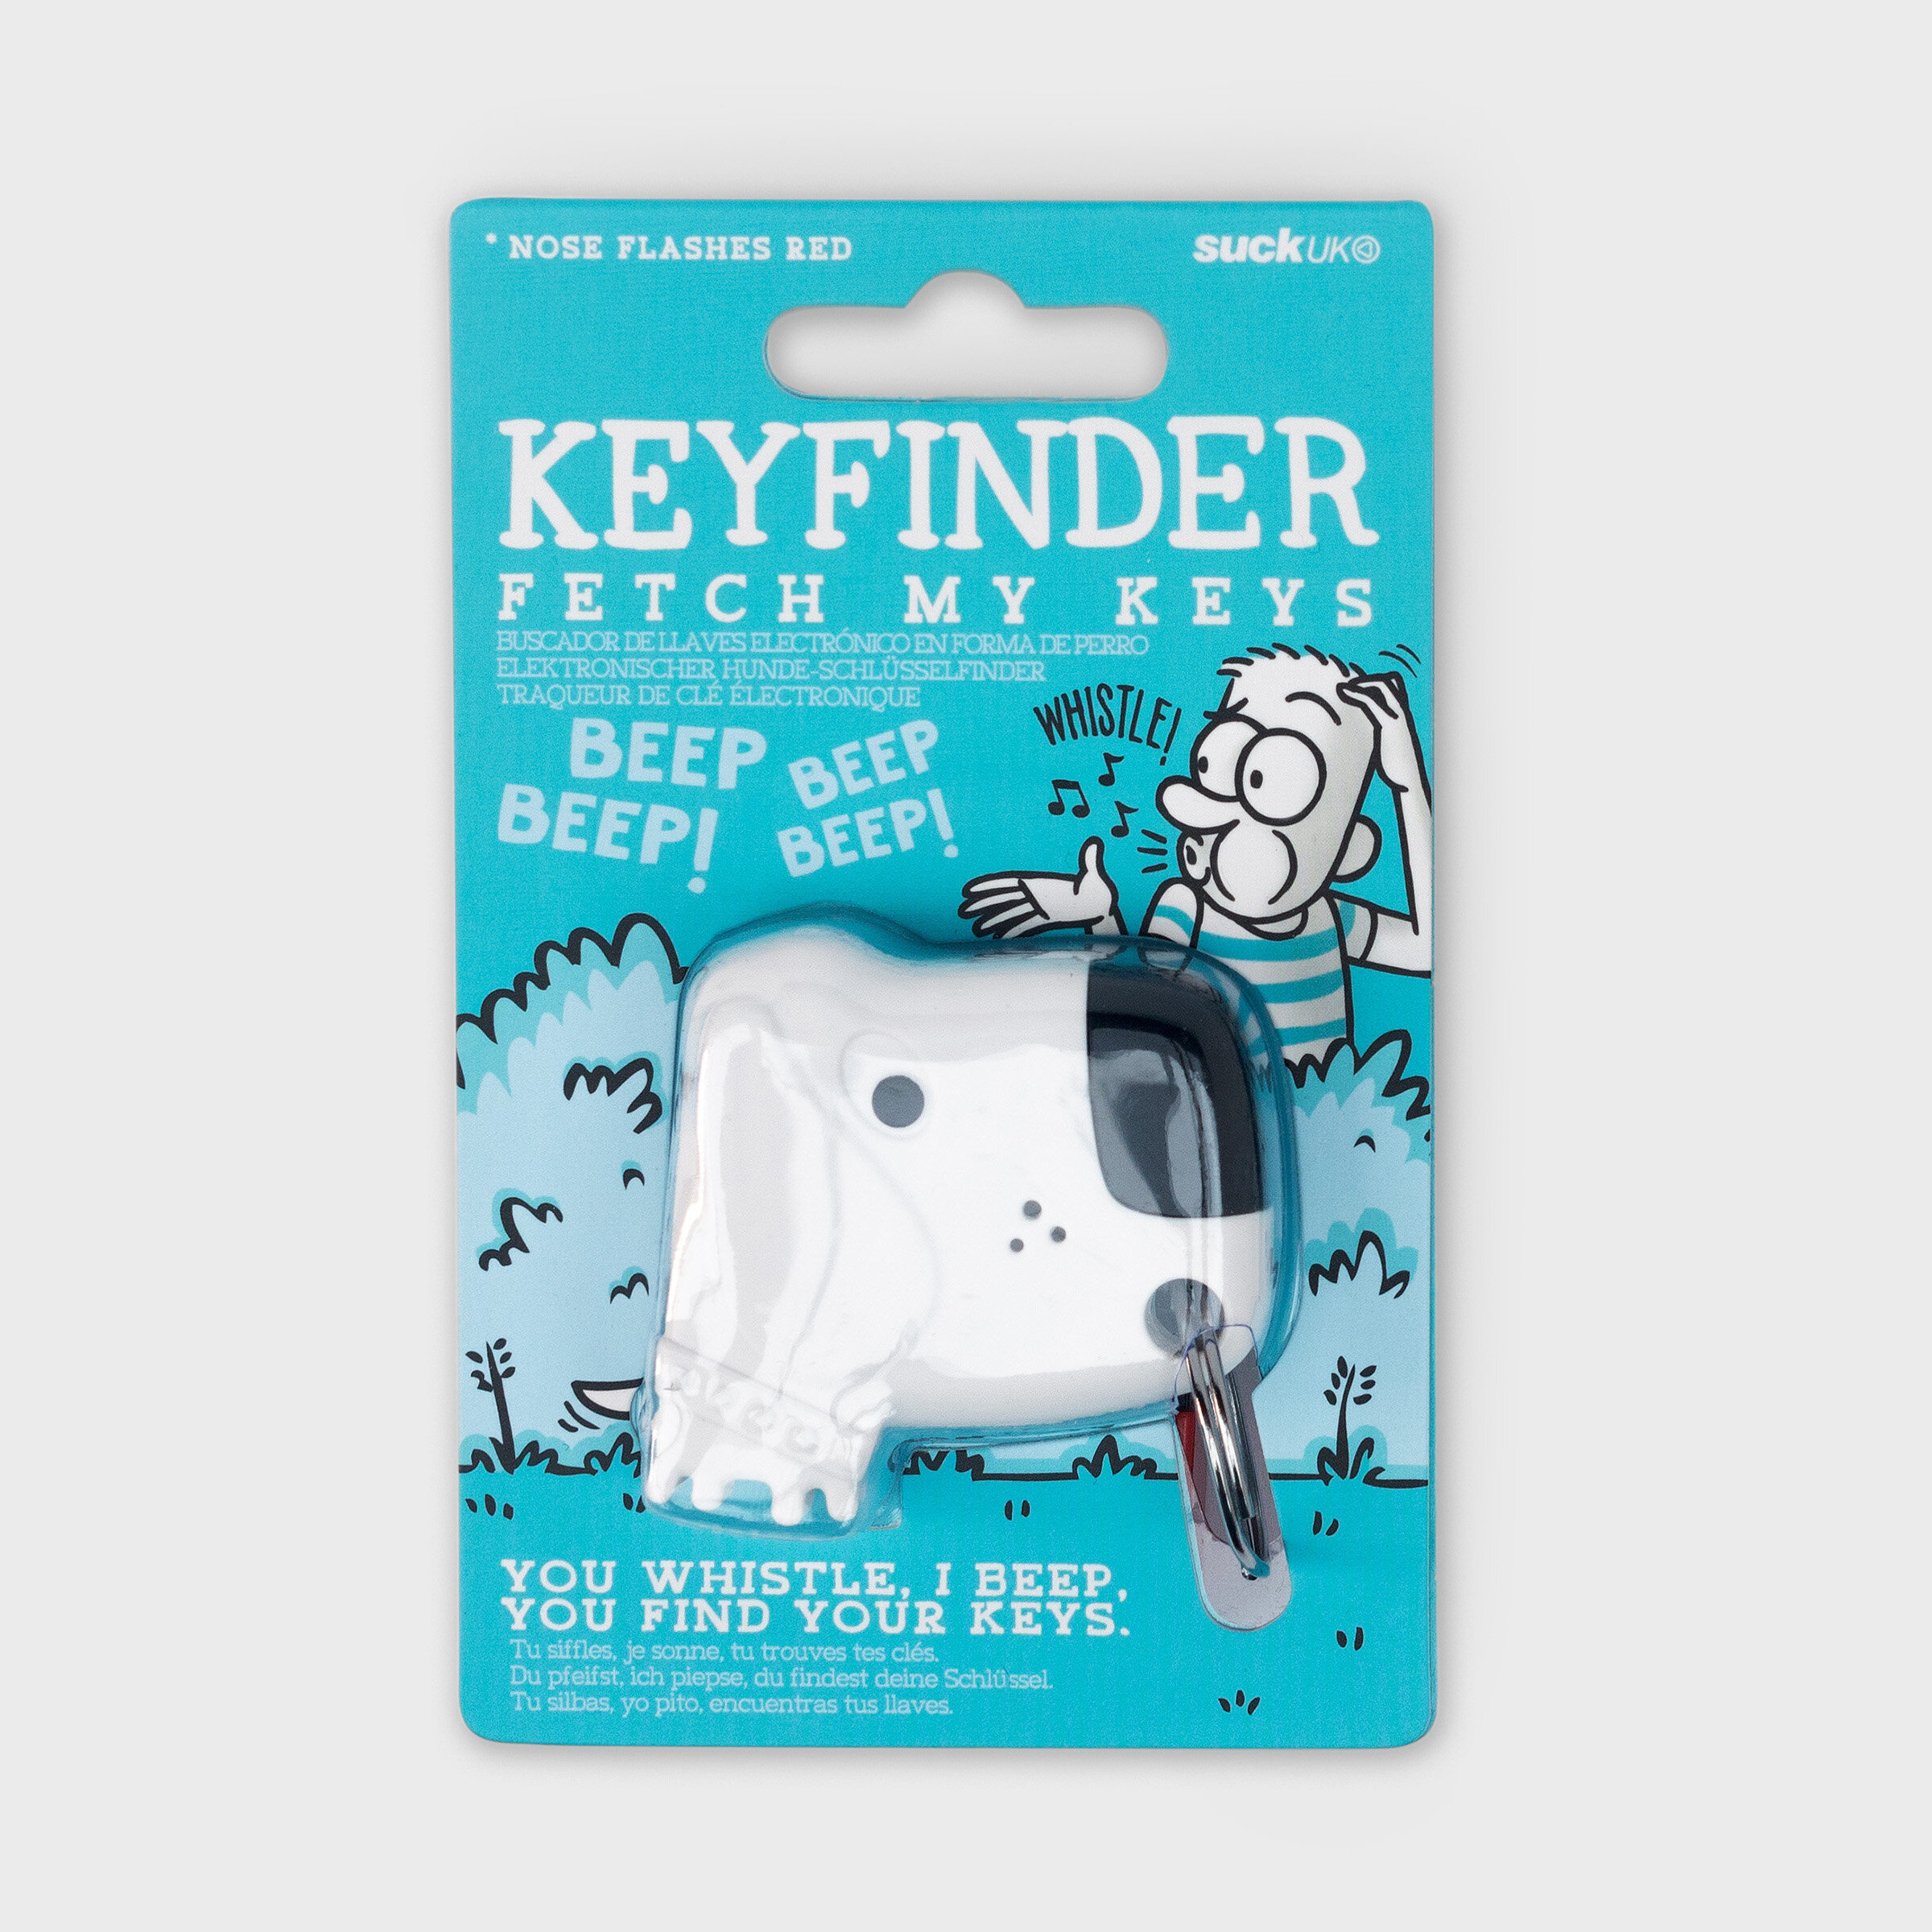 Dog Keyfinder in packaging